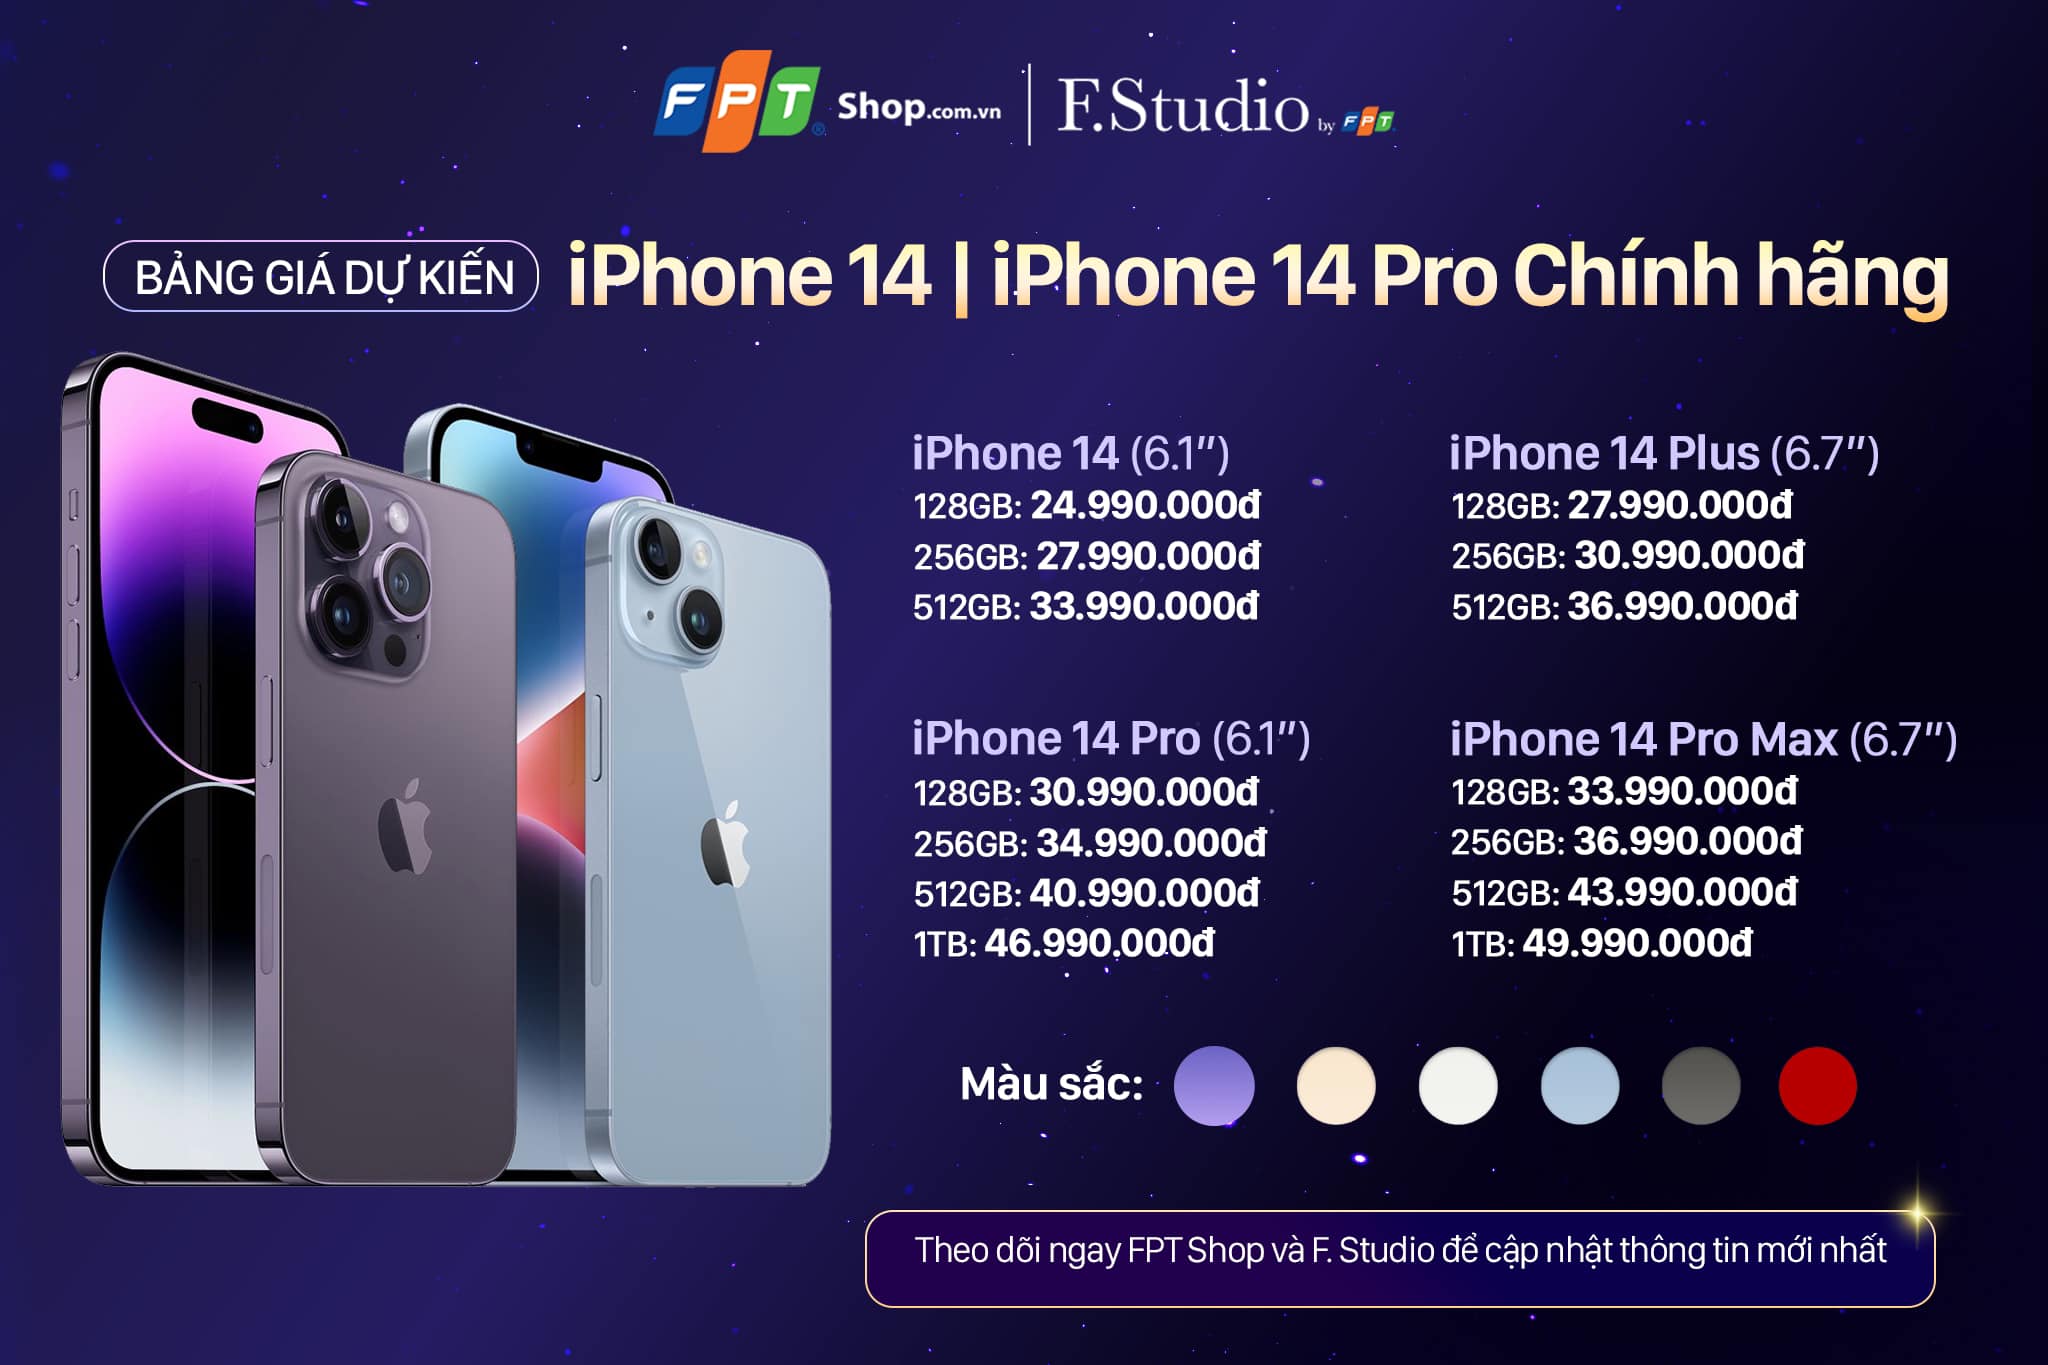 iPhone 14 đã có giá dự kiến, dòng Pro Max được ưa chuộng nhất - fpt Shop gia du kien